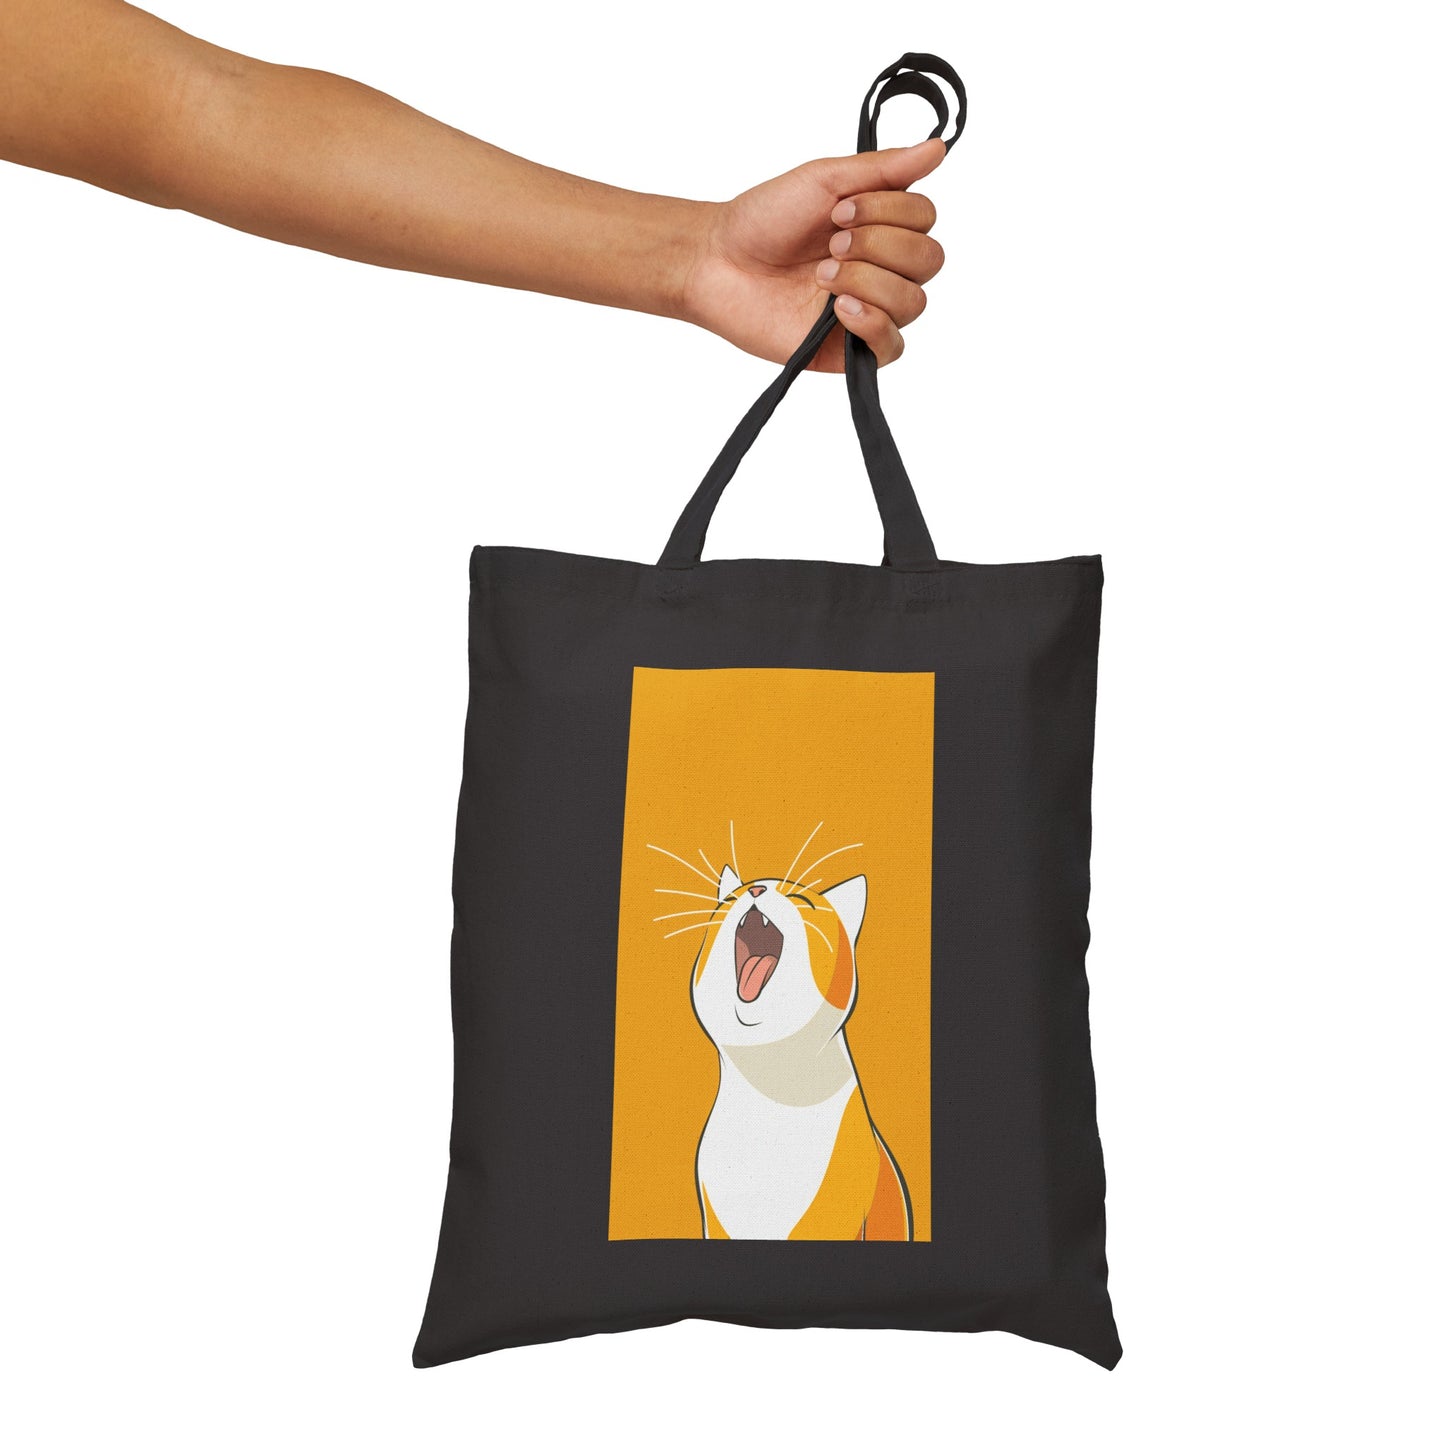 Yawning Cat Tote Bag